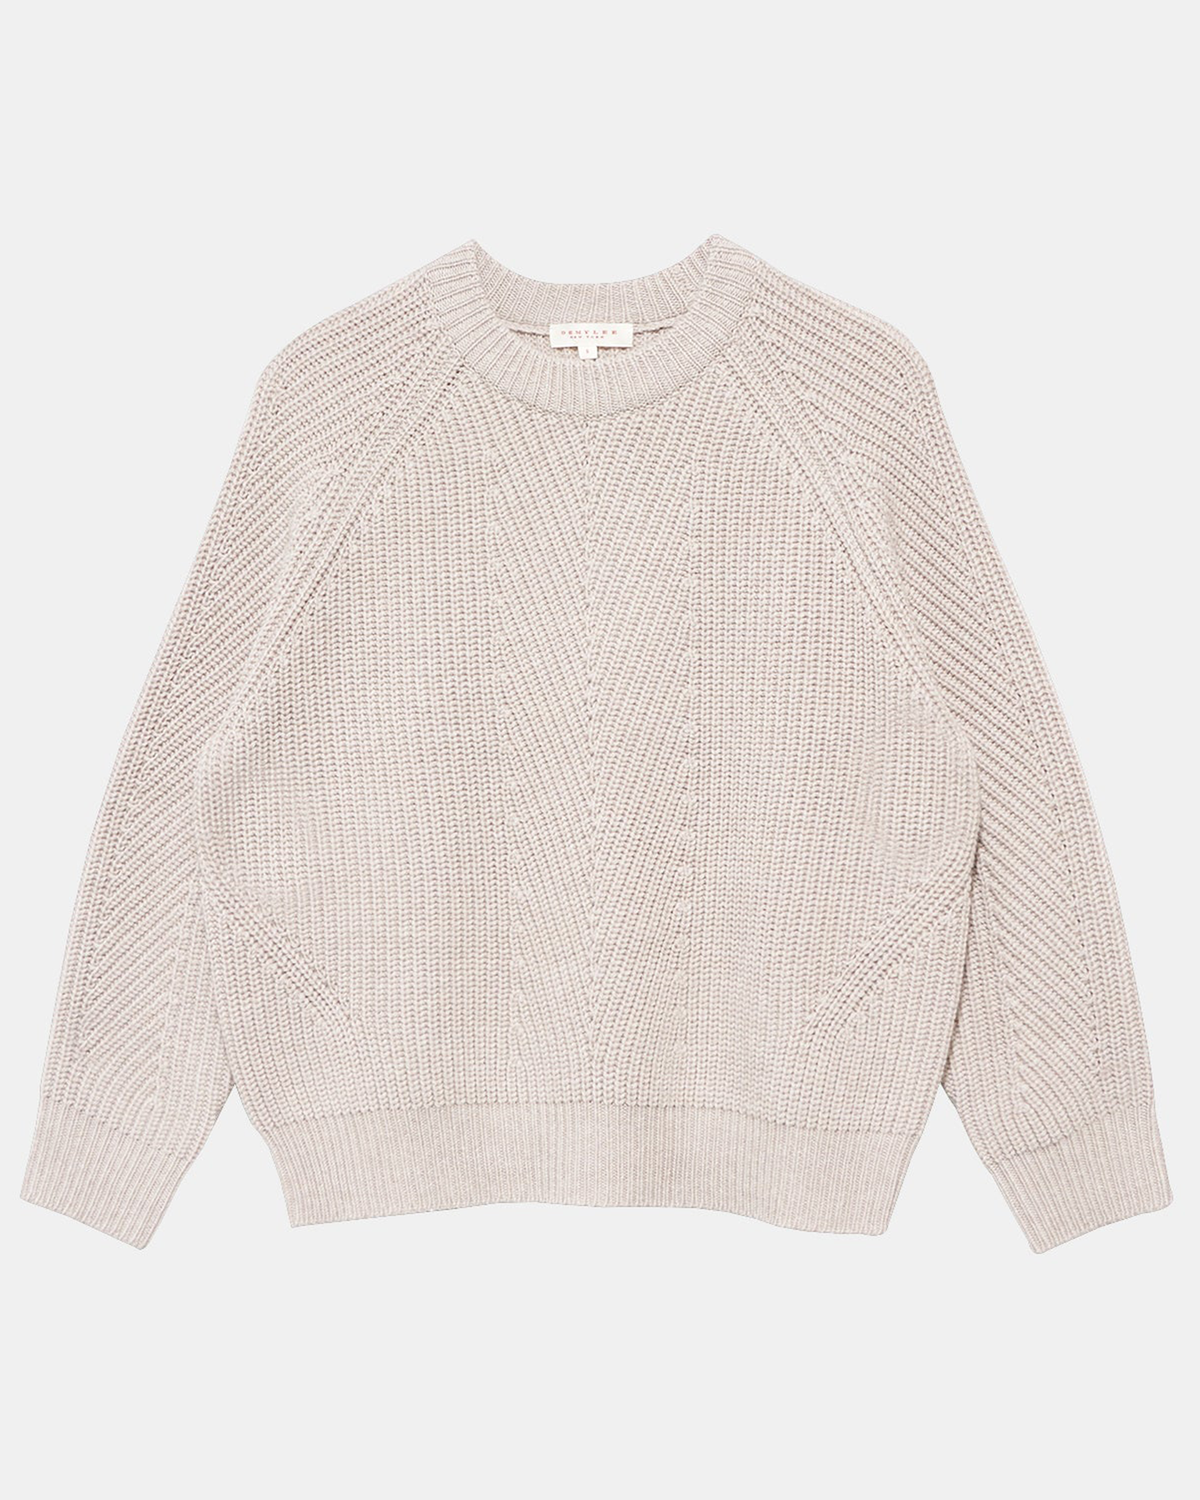 Chelsea Raglan Wool Sweater in Oatmeal